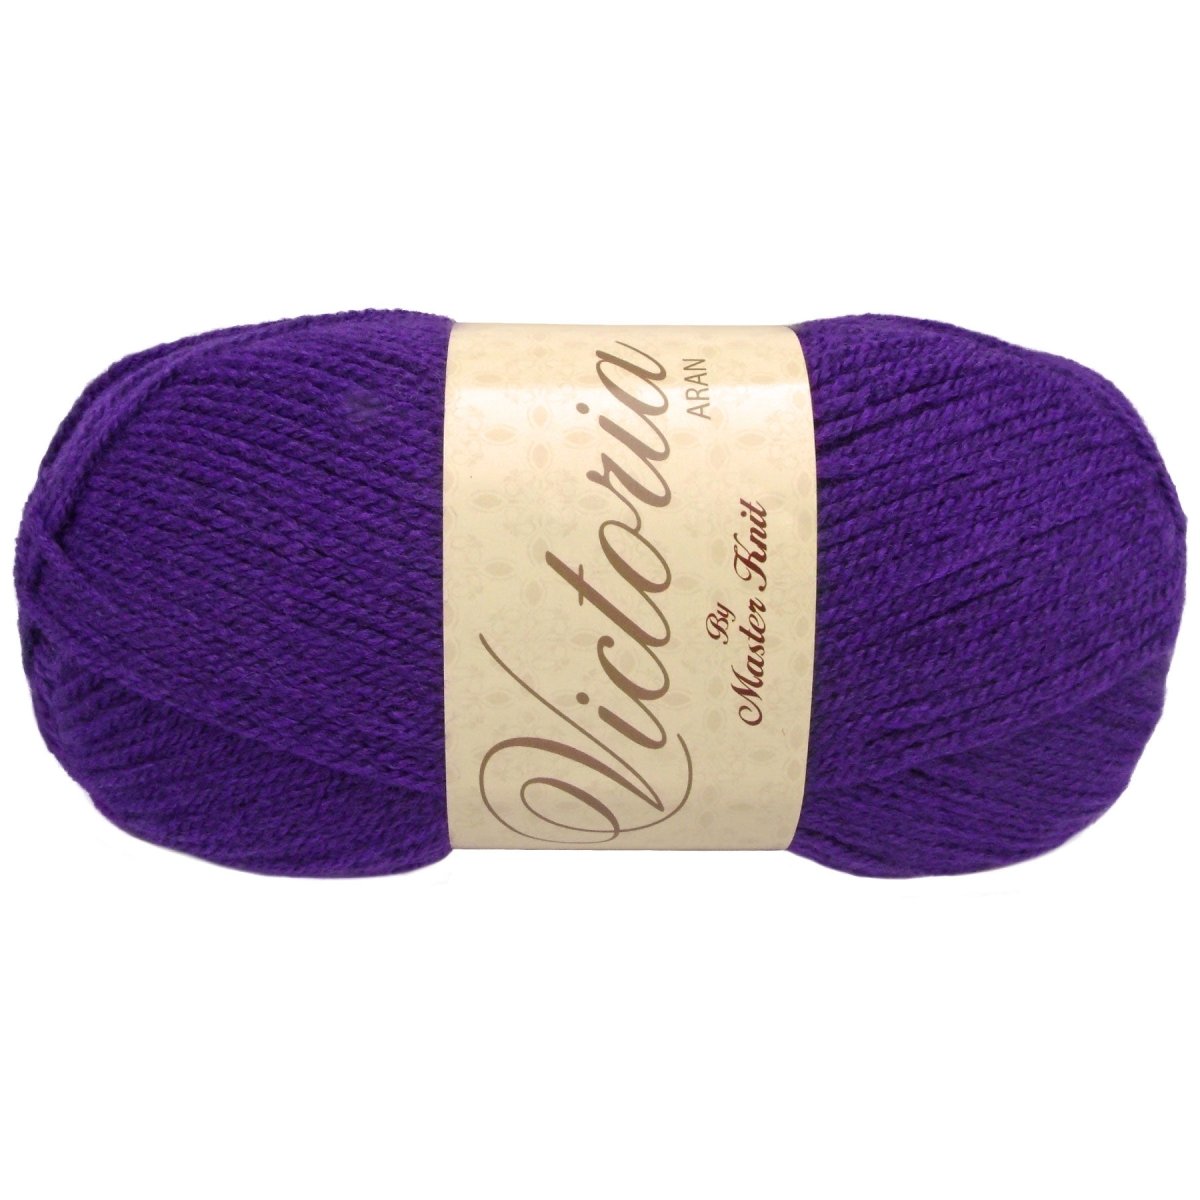 VICTORIA Aran - Crochetstores9120-552acrílico